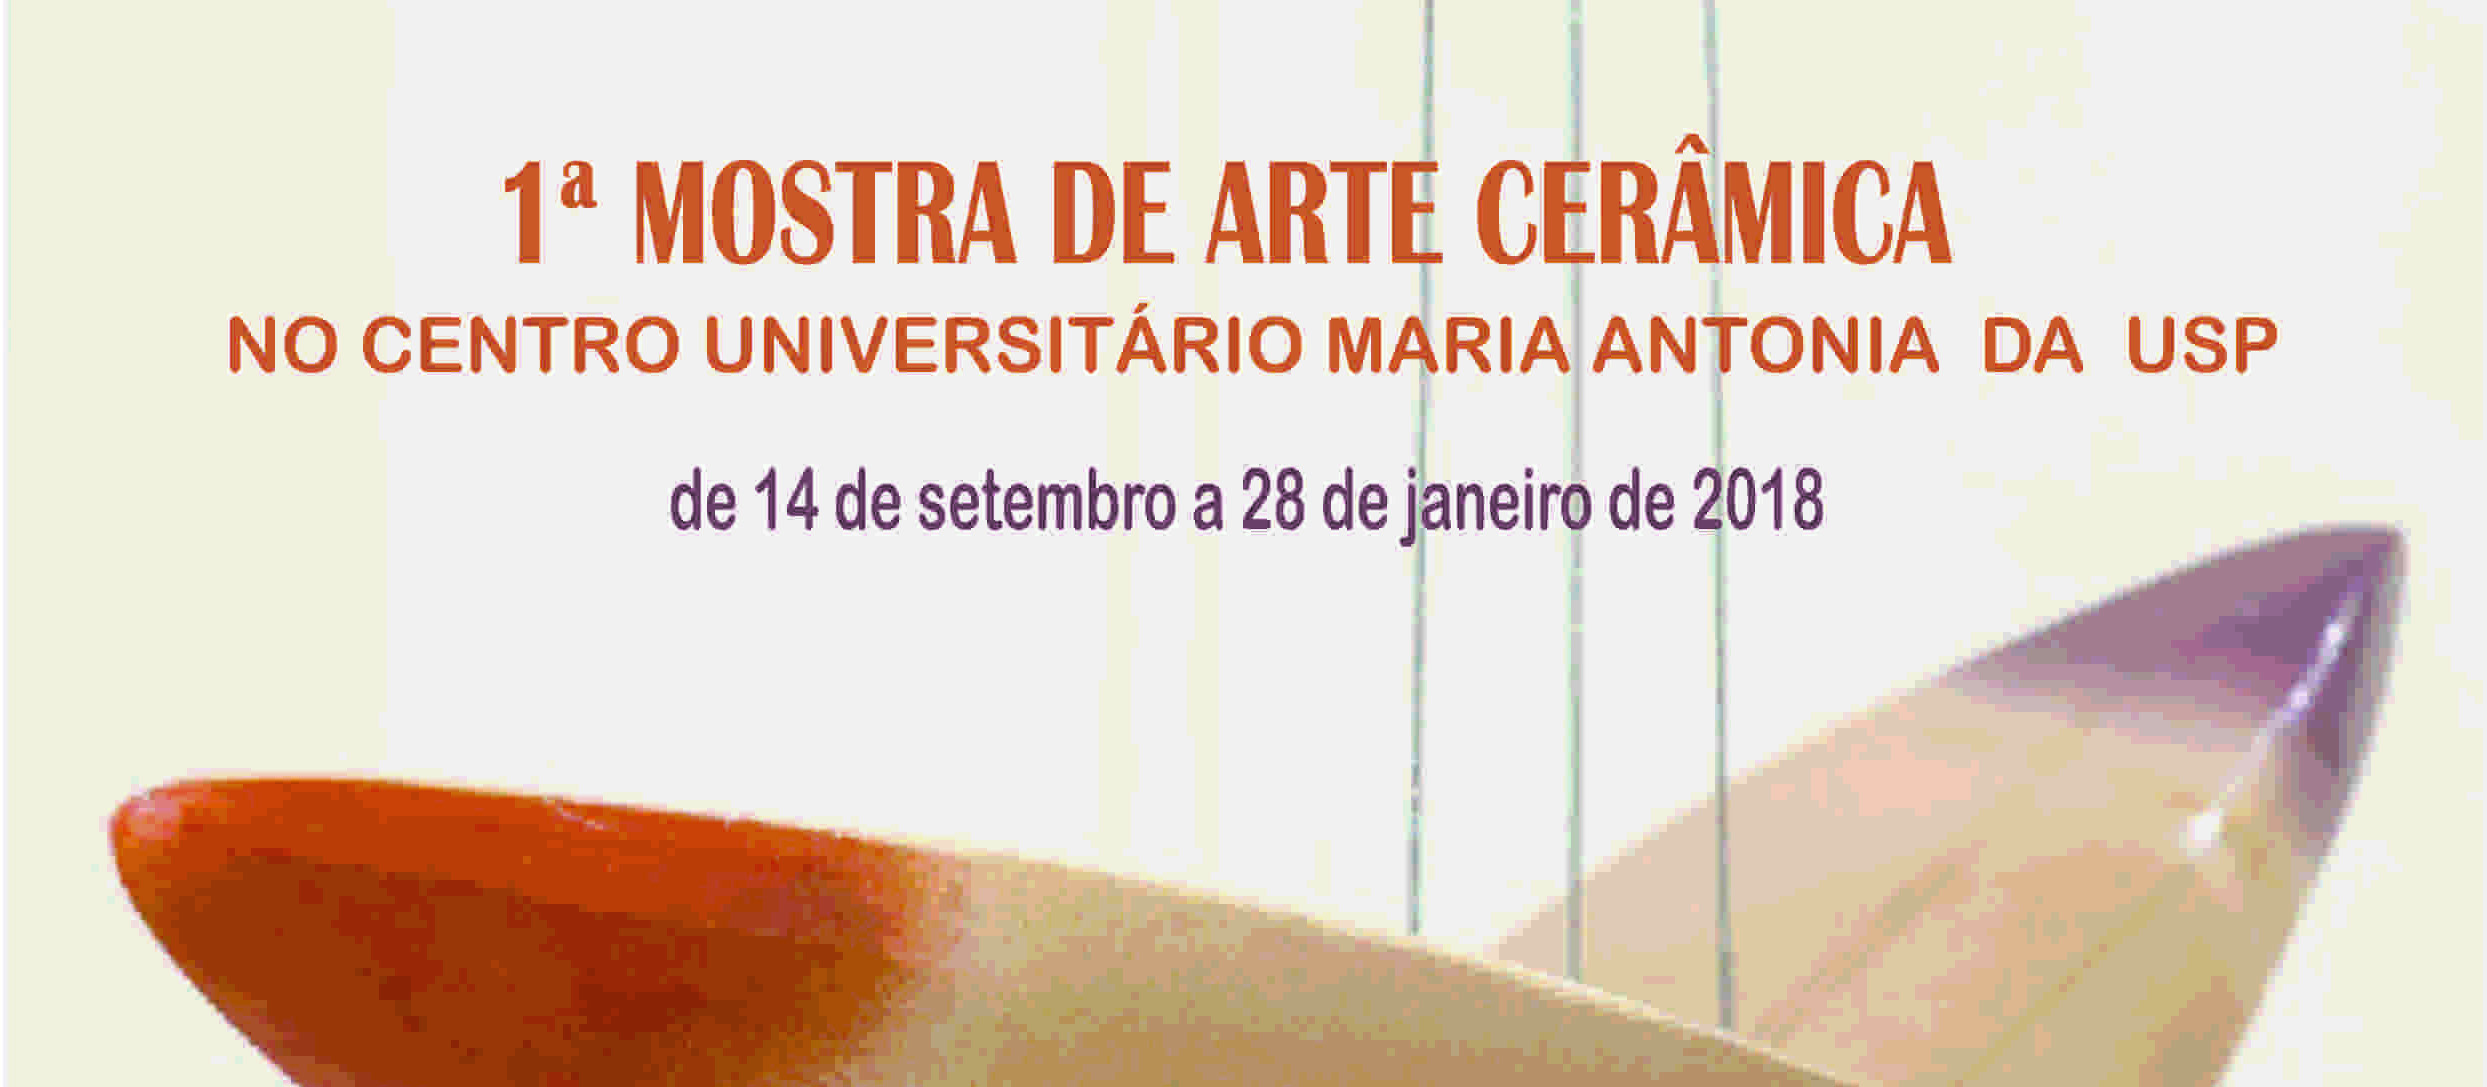 Exposição gratuita reúne obras de arte cerâmica no centro de São Paulo